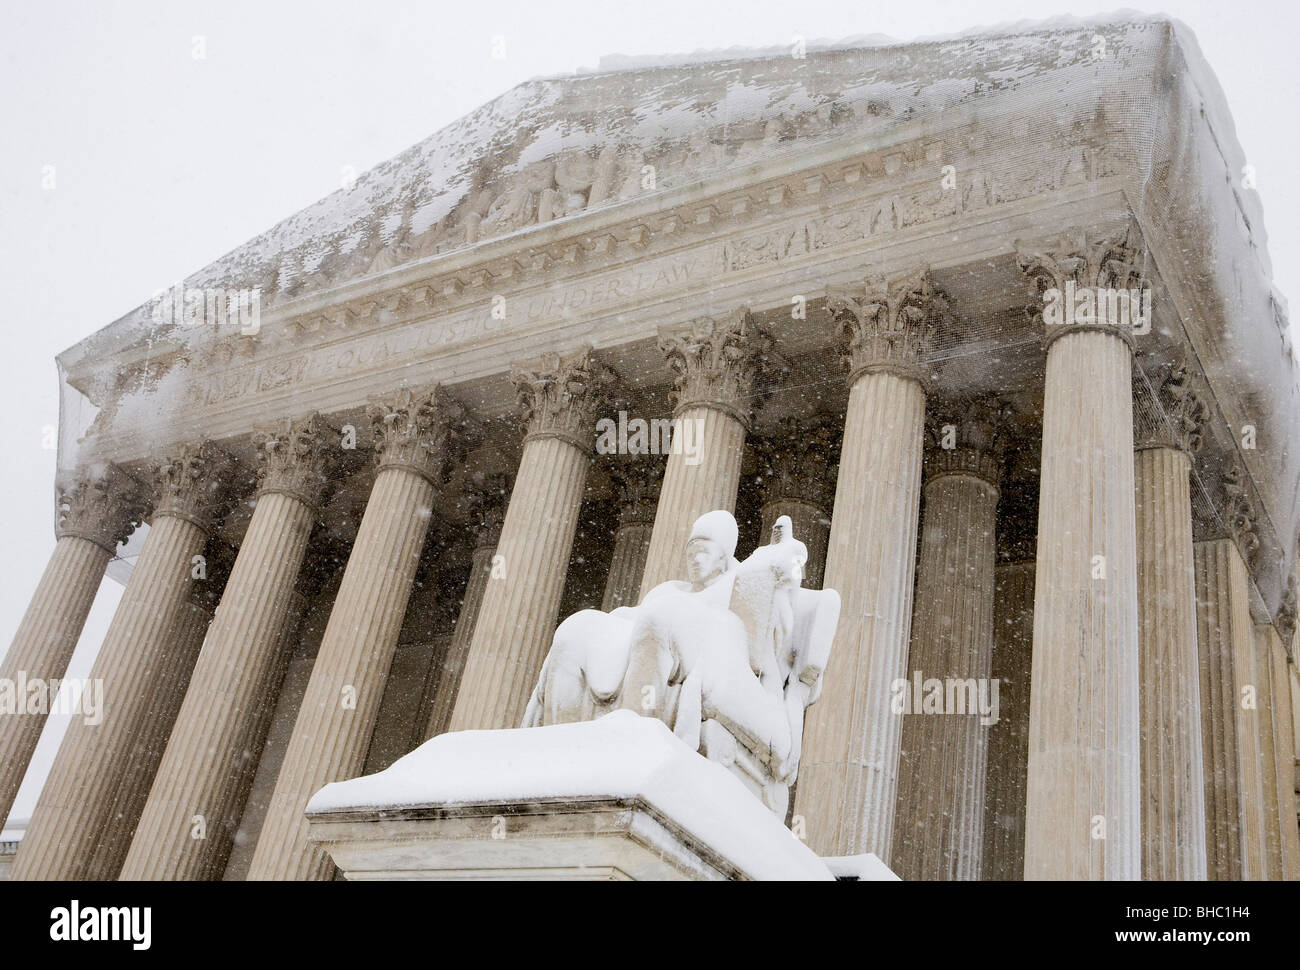 Des scènes de neige de la Cour suprême des États-Unis. Banque D'Images